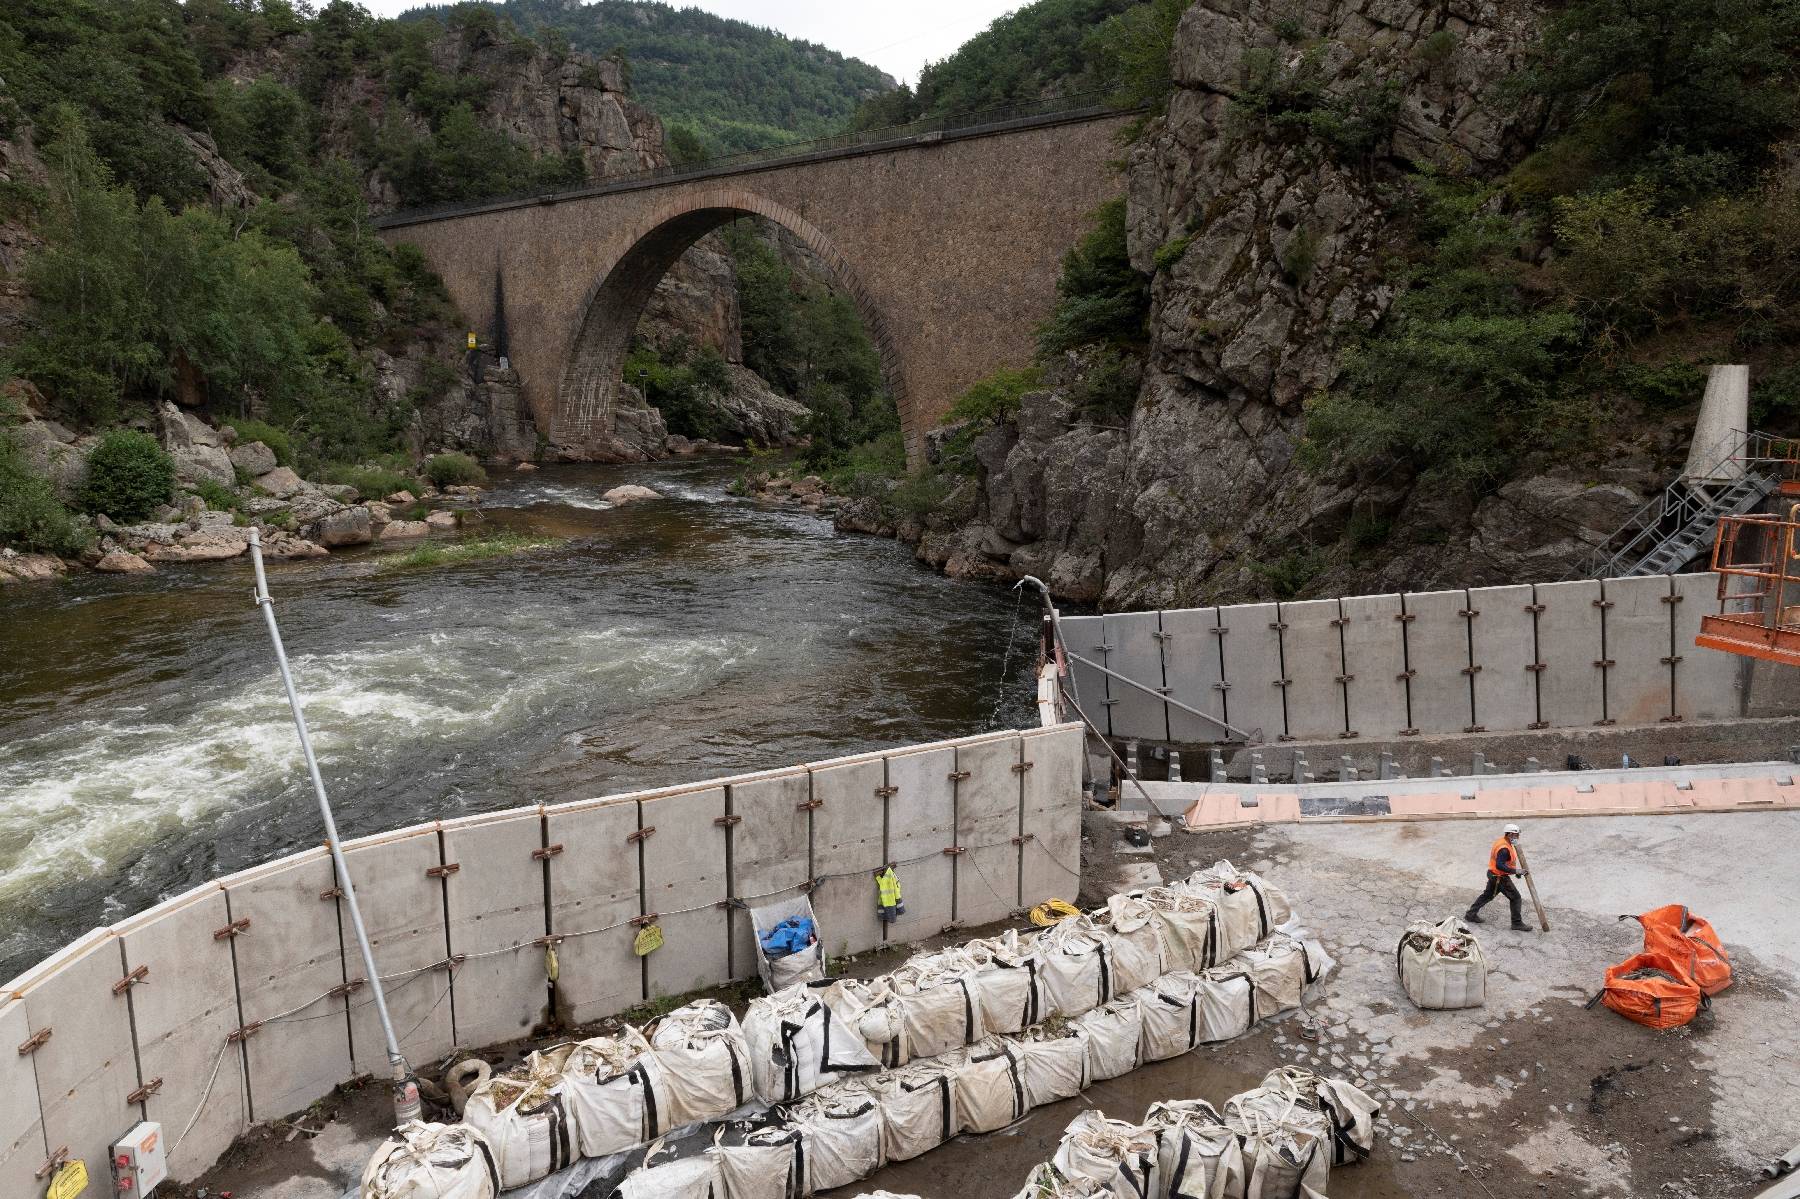 La France pourrait produire 20% d'hydroélectricité de plus, selon les exploitants